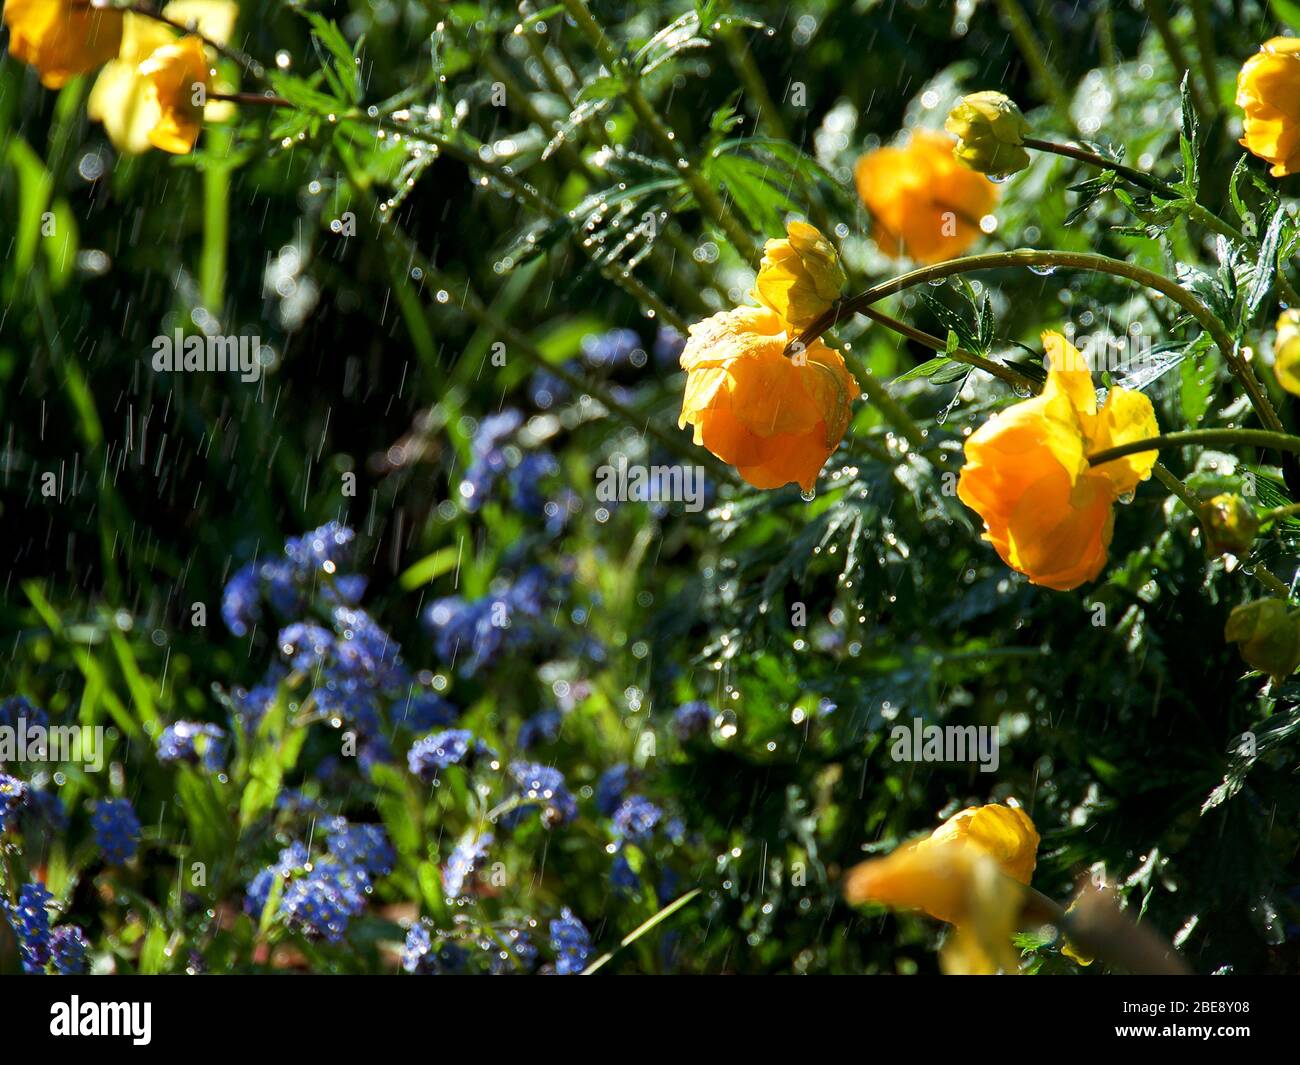 Trollius europaeus spring flowers in the rain, Stock Photo